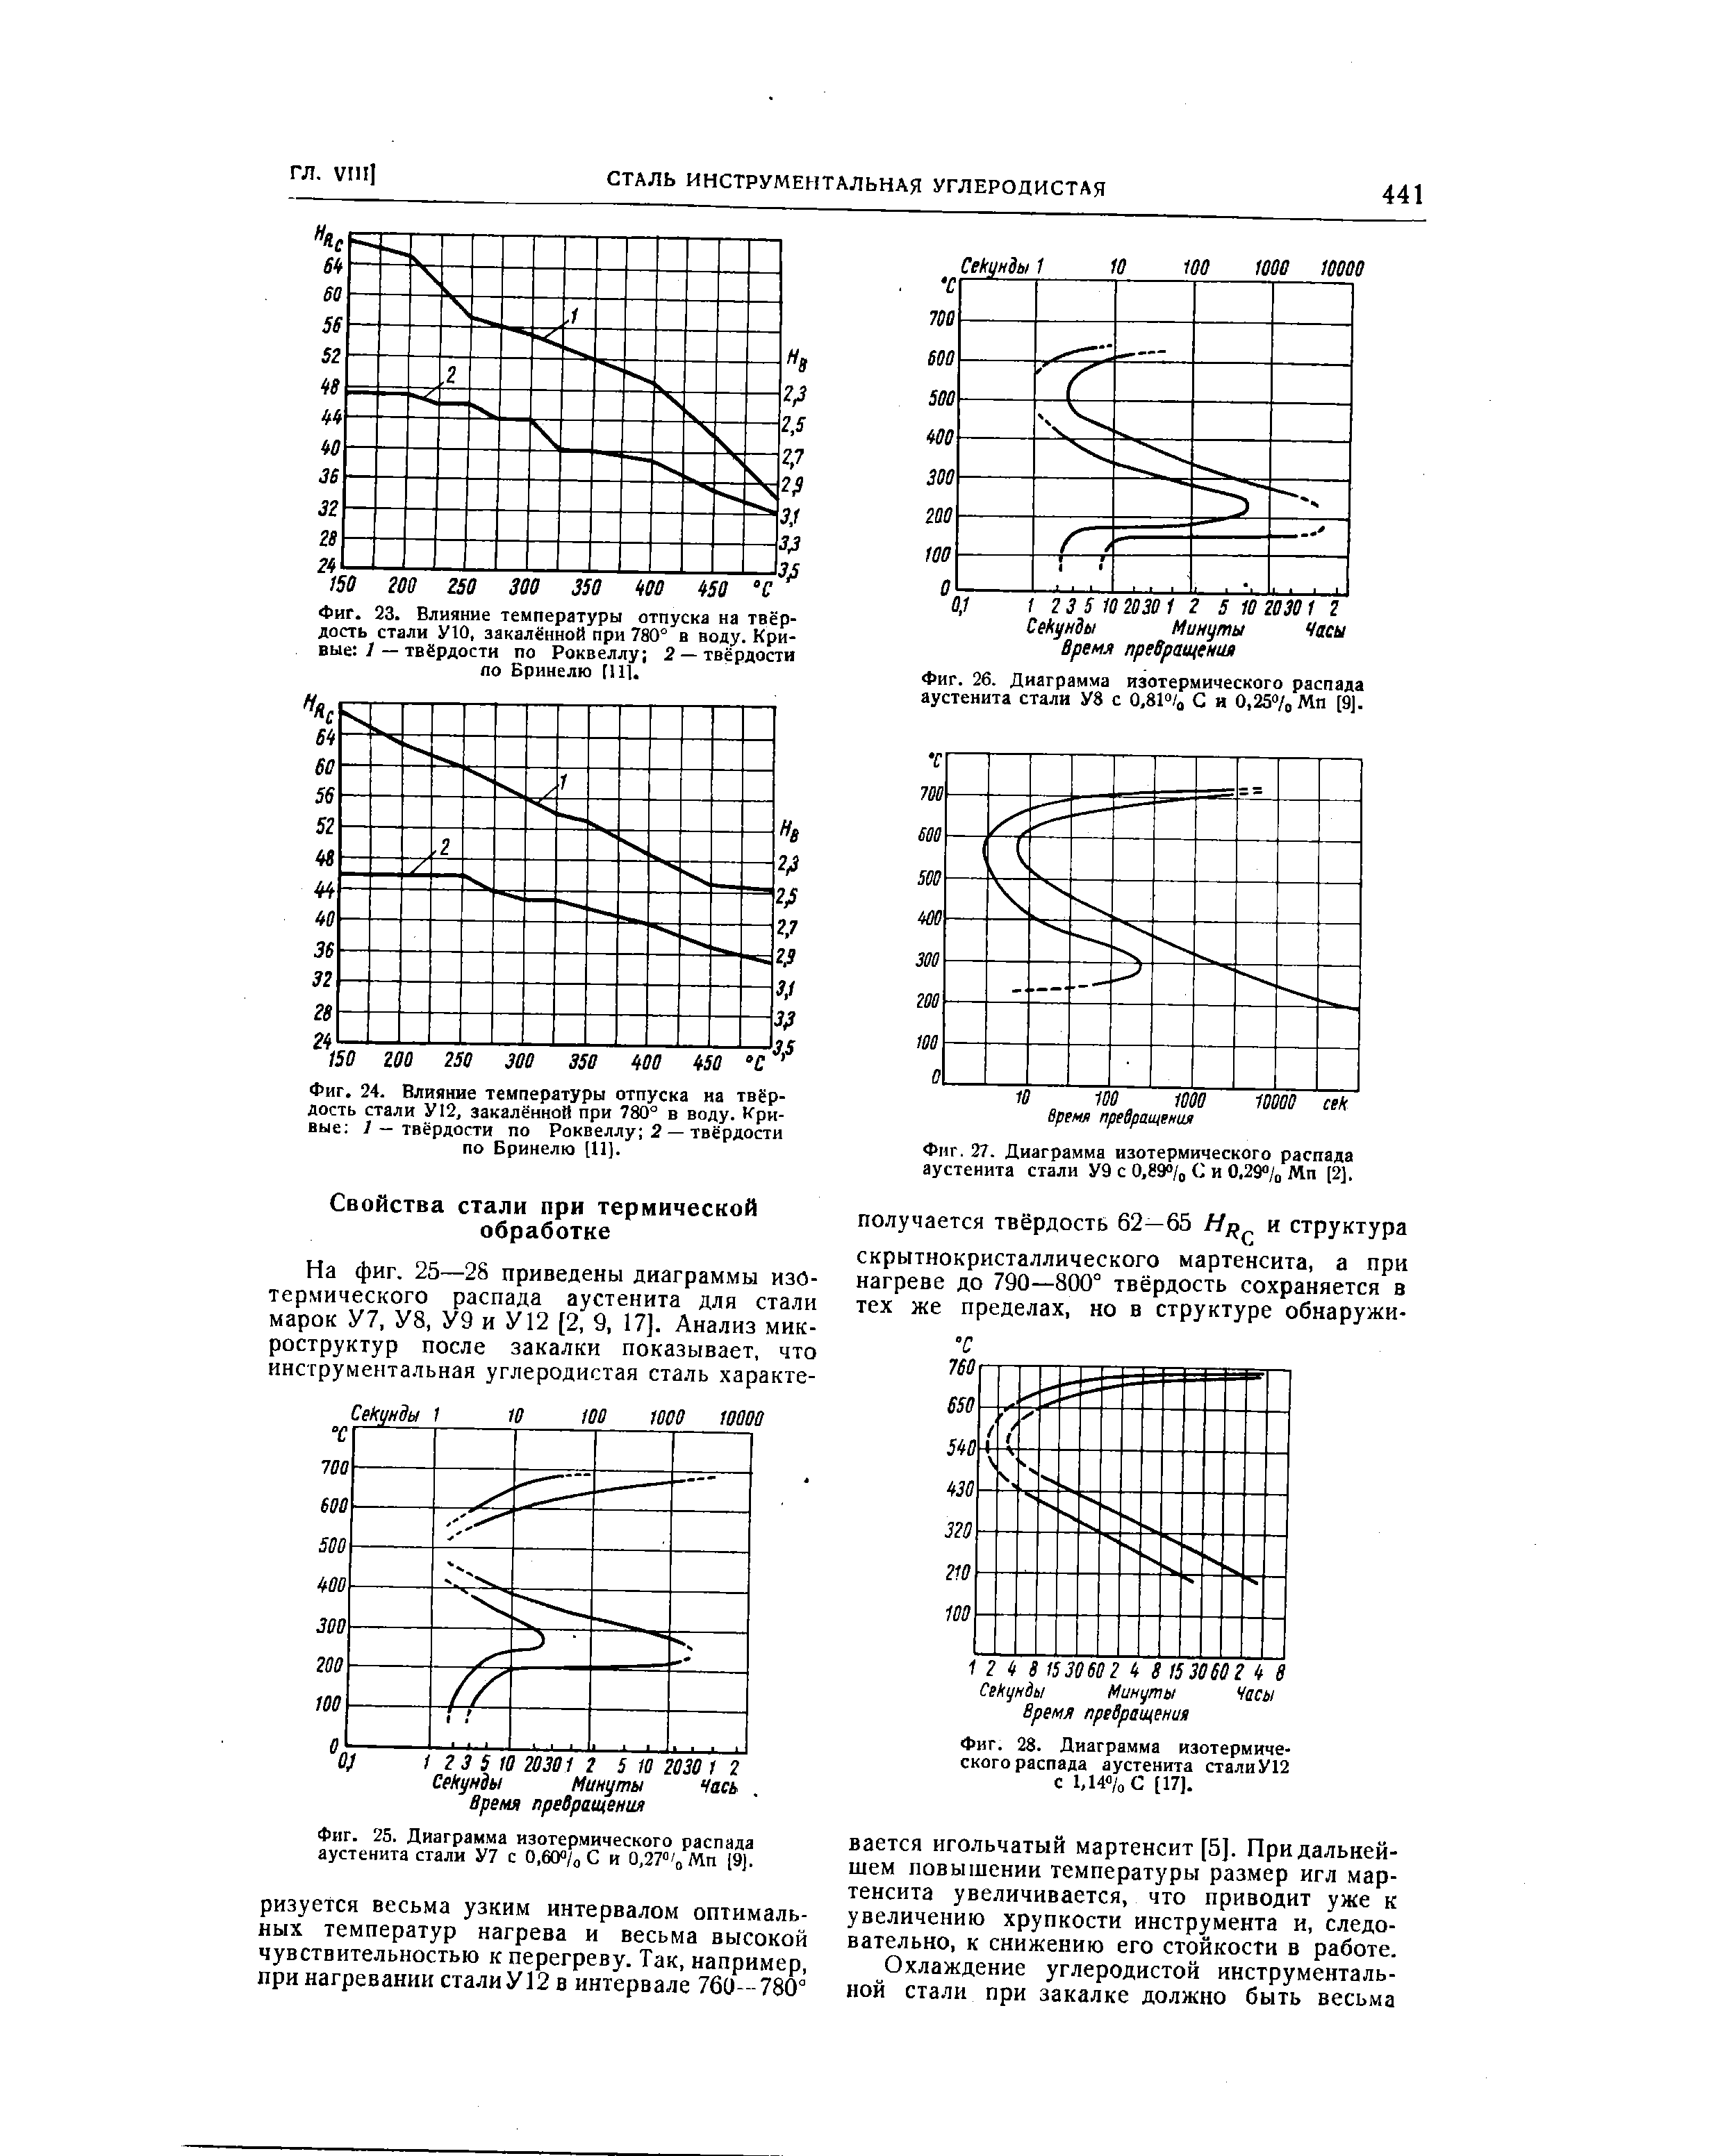 Фиг. 28. Диаграмма изотермического распада аустенита стали У12 с 1,14 /оС [17].
